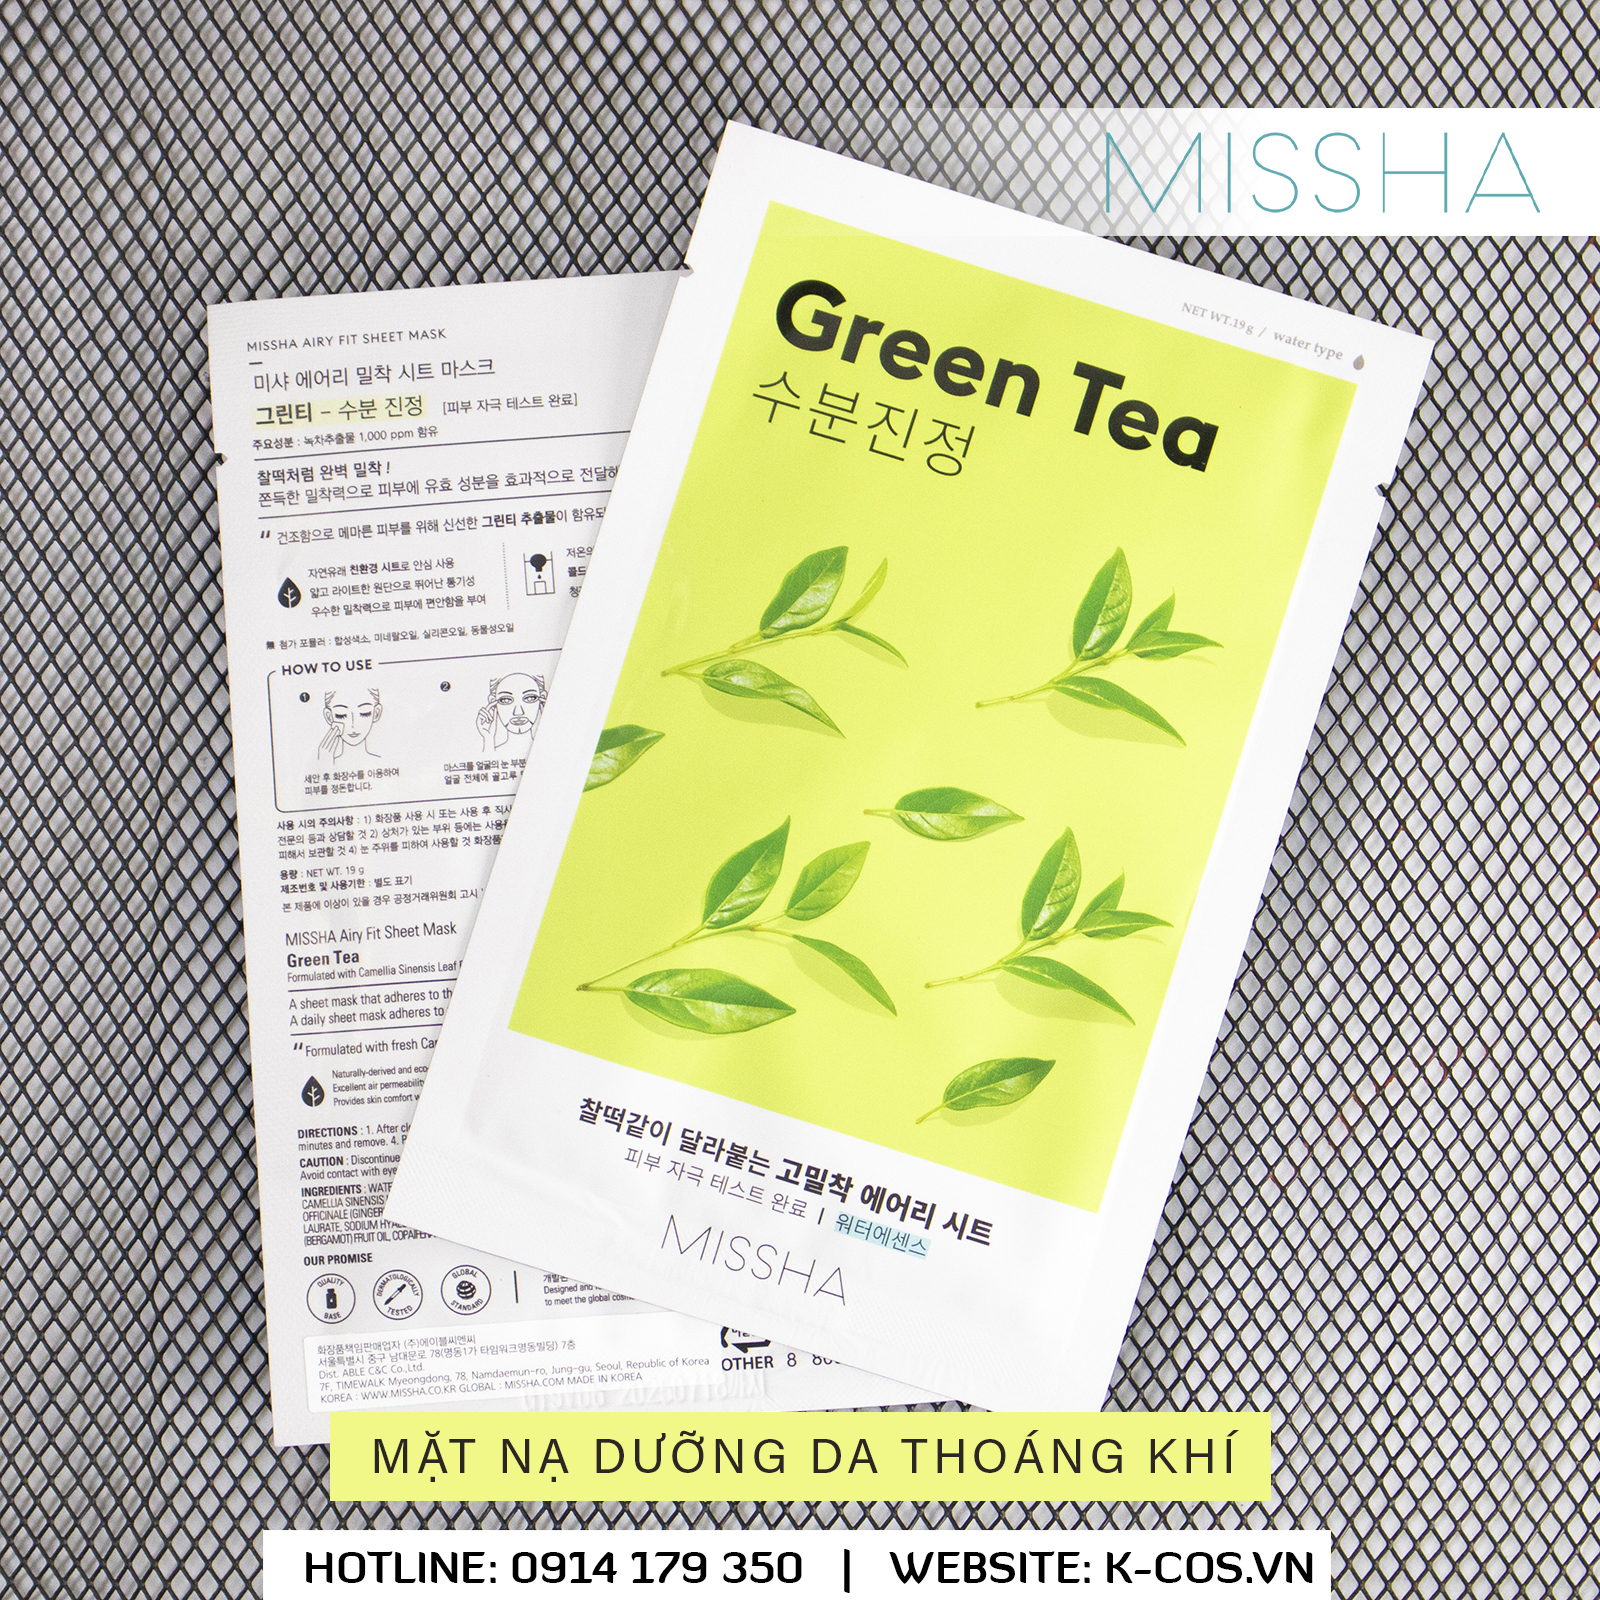 Mặt nạ thoáng khí hương Trà Xanh - Missha Airy Fit Sheet Mask Green Tea